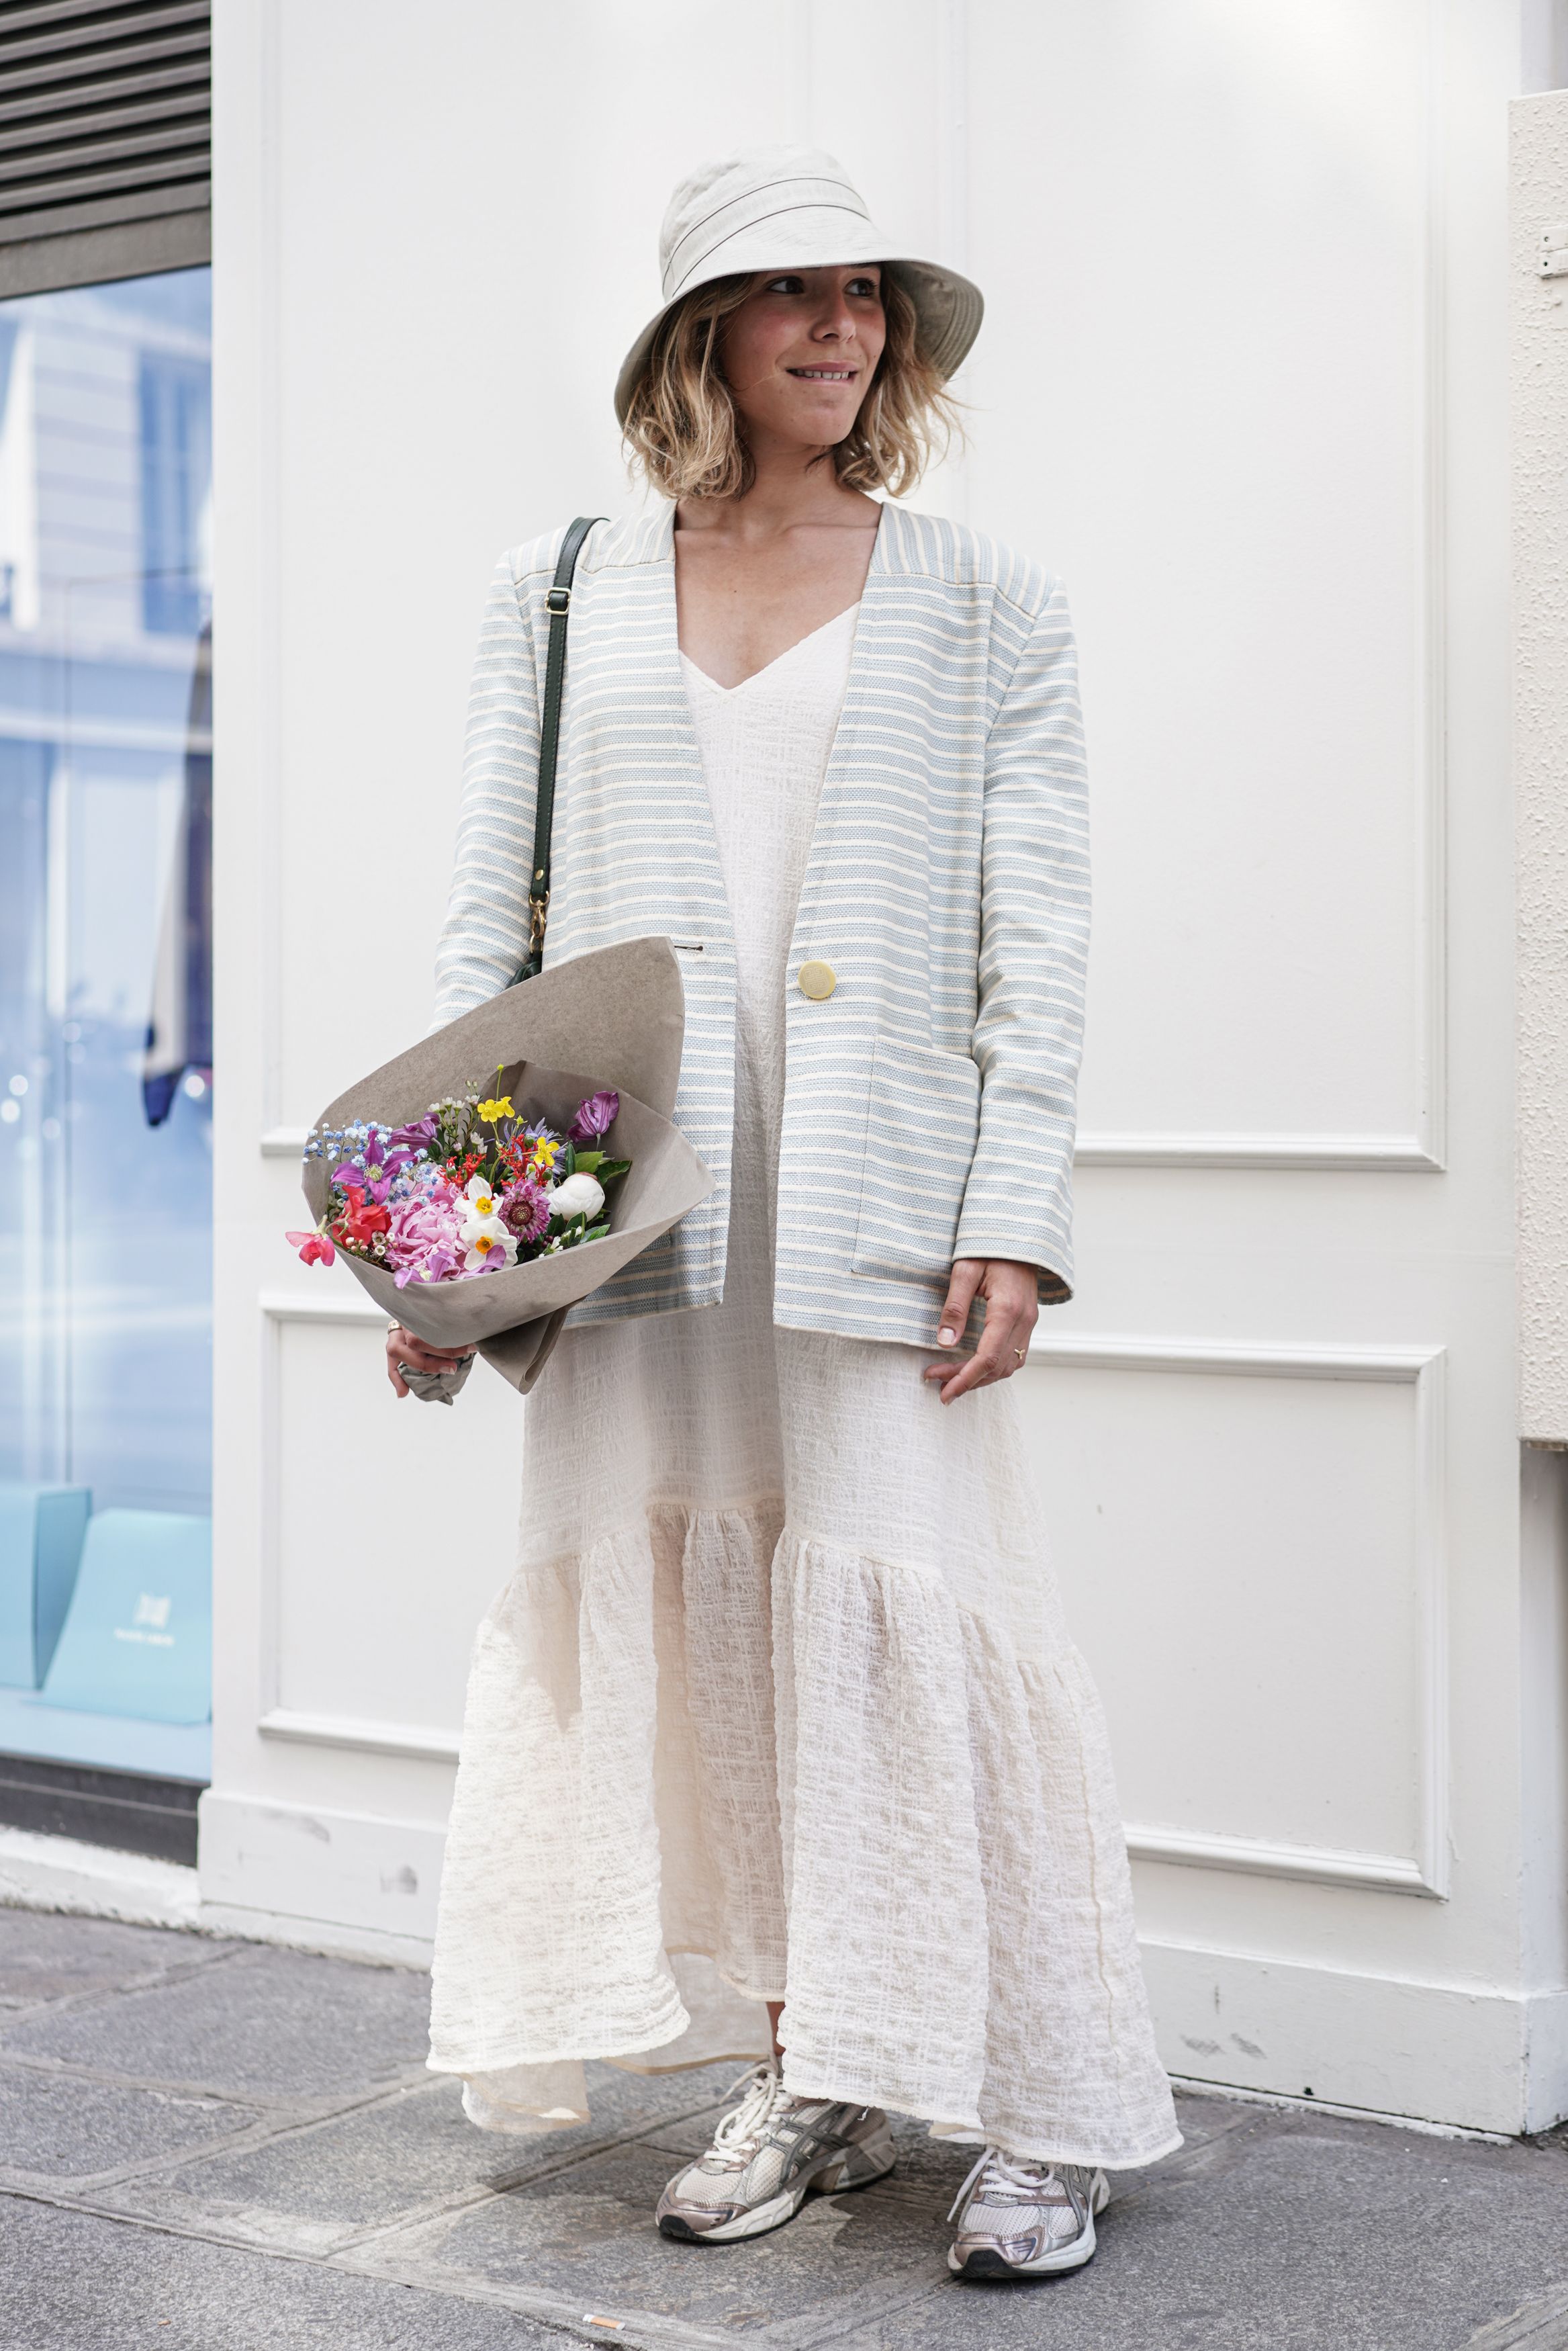 今年も話題の パリ最新情報「パリジェンヌの夏の装いは、一枚で着映え